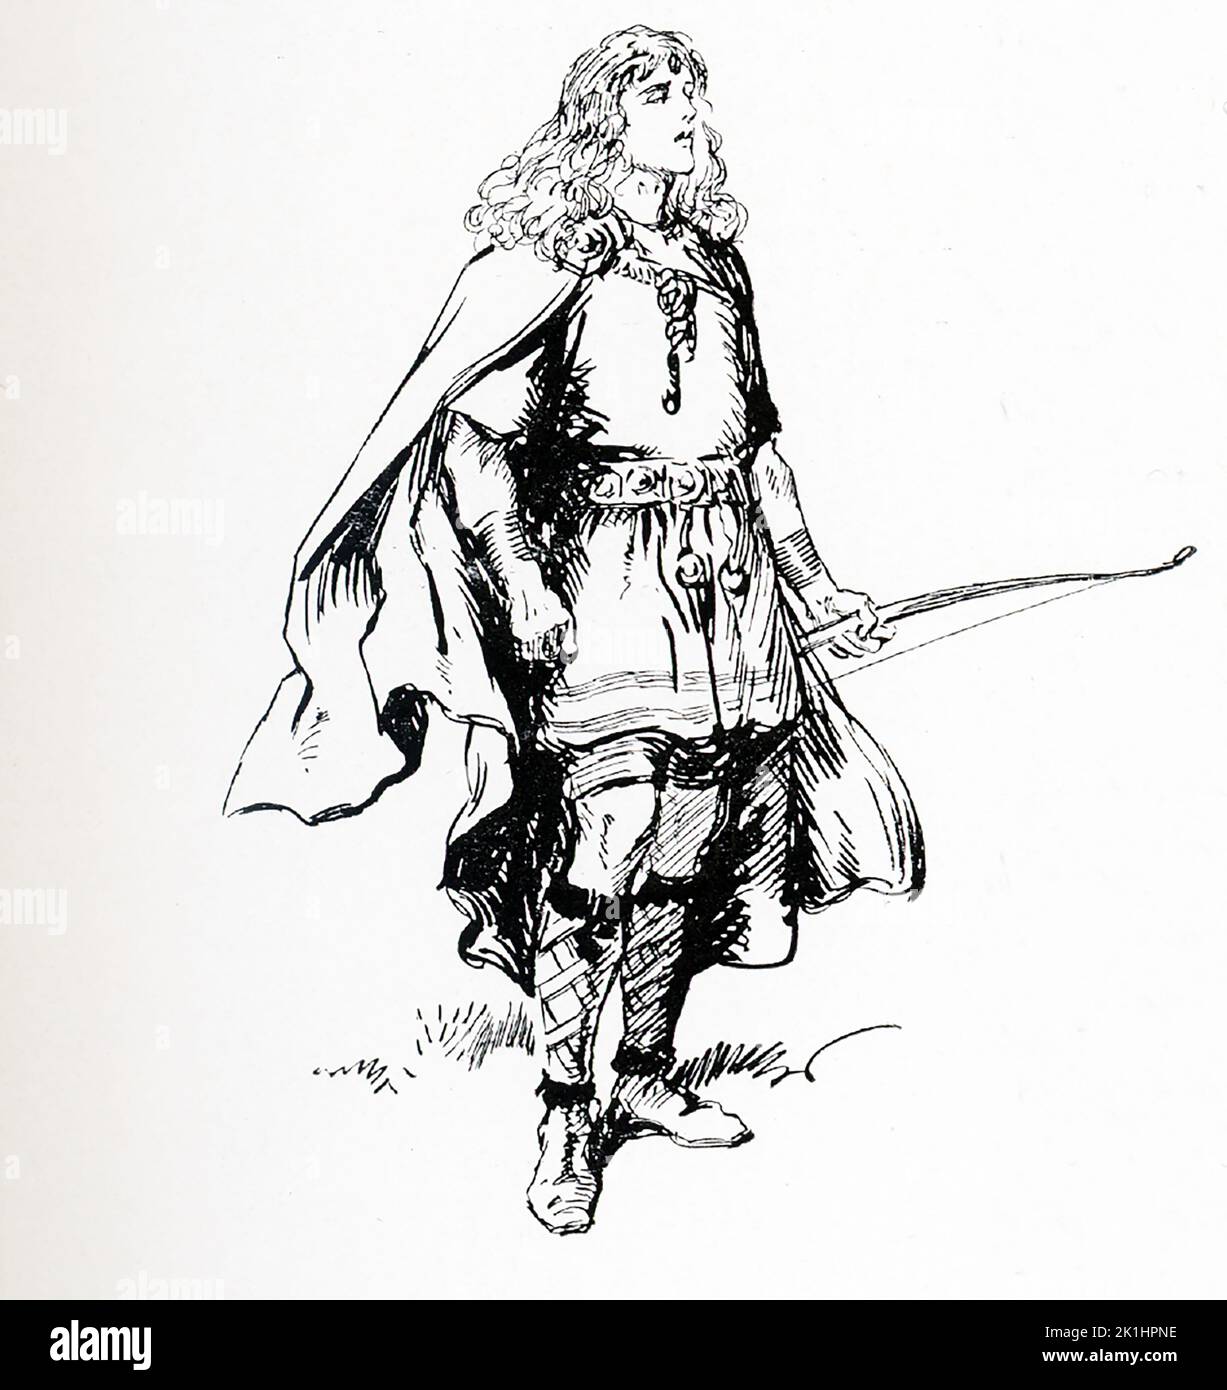 Secondo la mitologia norrena, Balder (anche Baldr e Baldur) è il dio norreno della pace, della luce e della primavera. Figlio del potente Odino, fu amato dagli Aesir, gli dei norrani. Questa illustrazione di Gordon Browne risale al 1913. Foto Stock